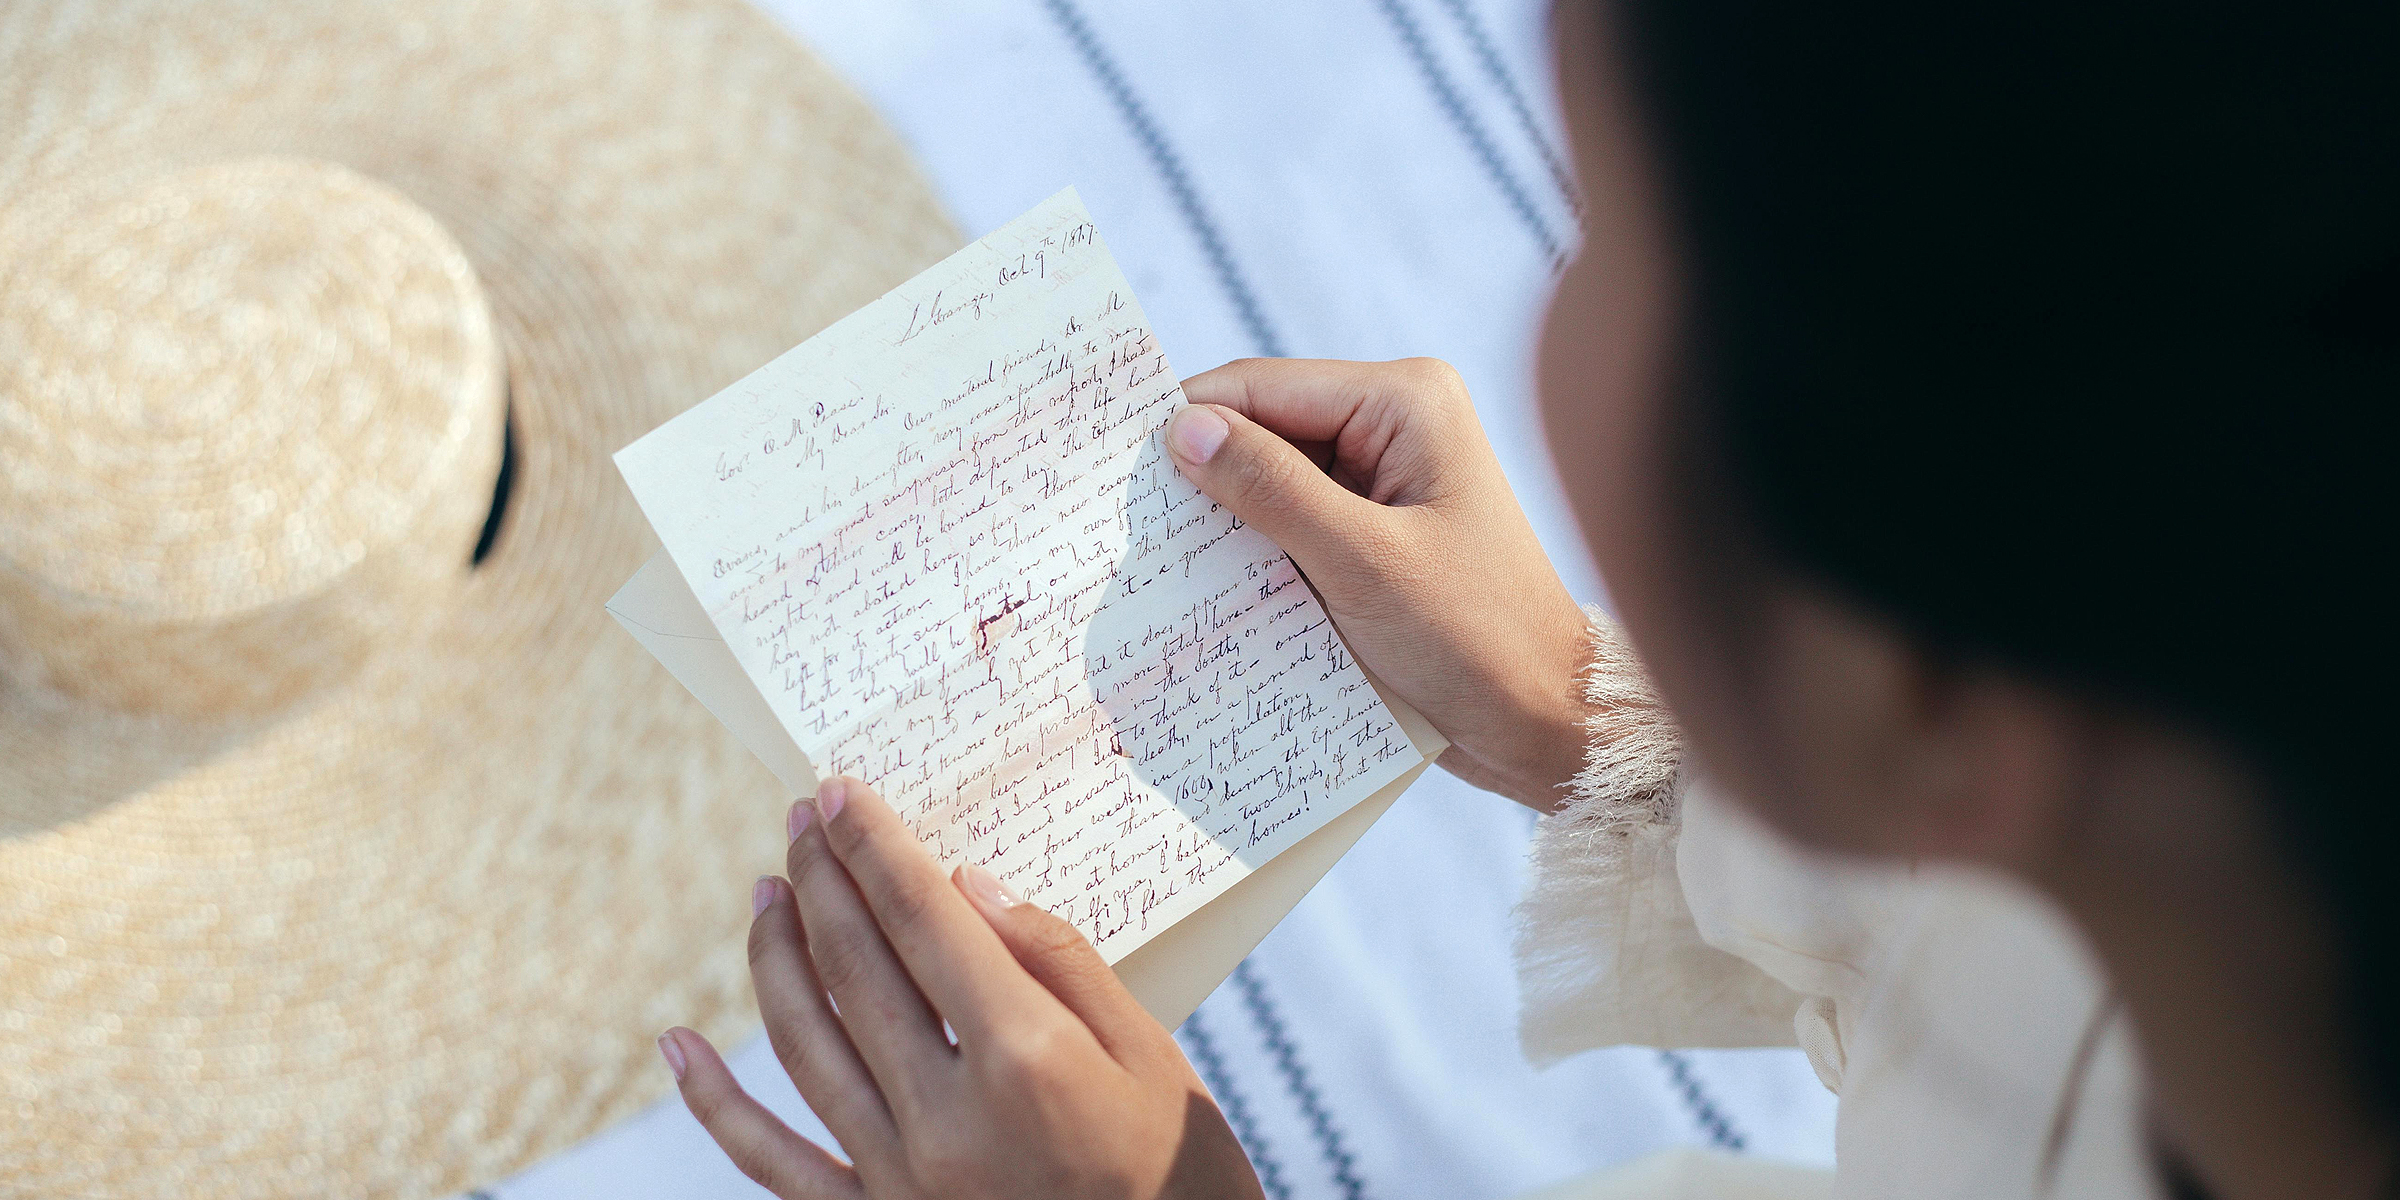 Une femme en train de lire une lettre | Source : Pexels